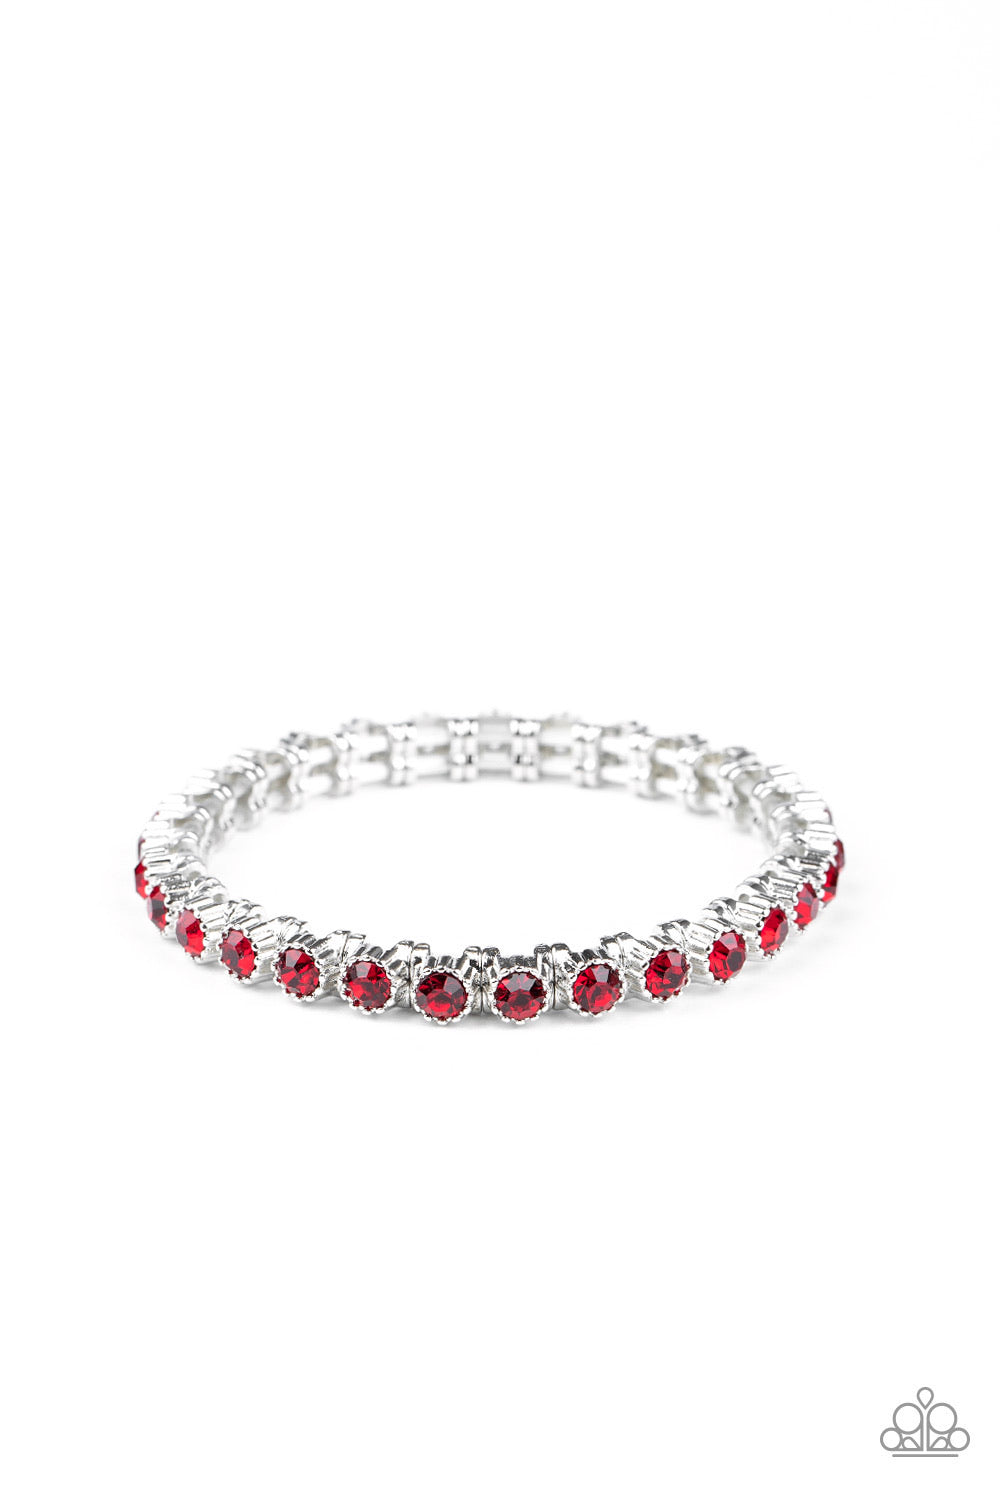 Paparazzi Bracelets -  Starry Social - Red